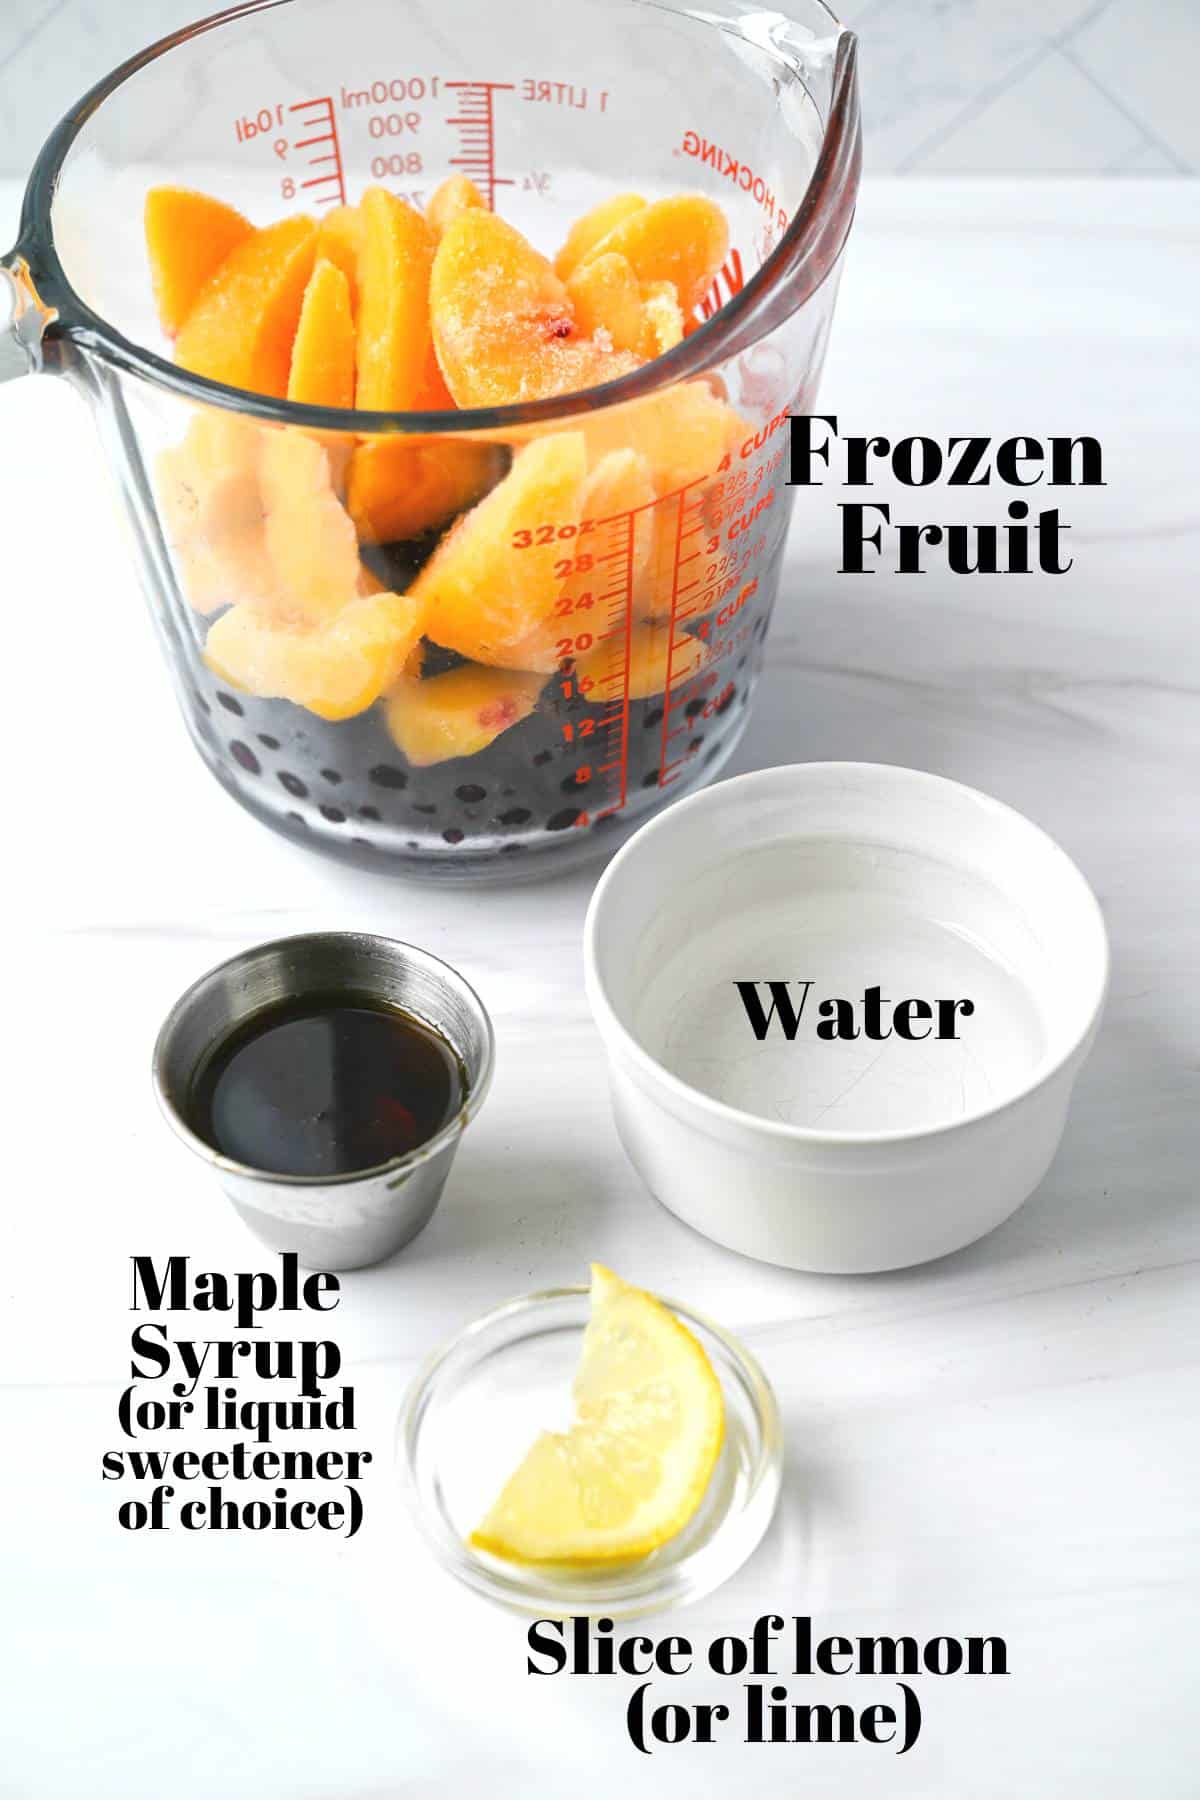 base ingredients for making blender sorbet: frozen fruit, water, maple syrup, and lemon slice